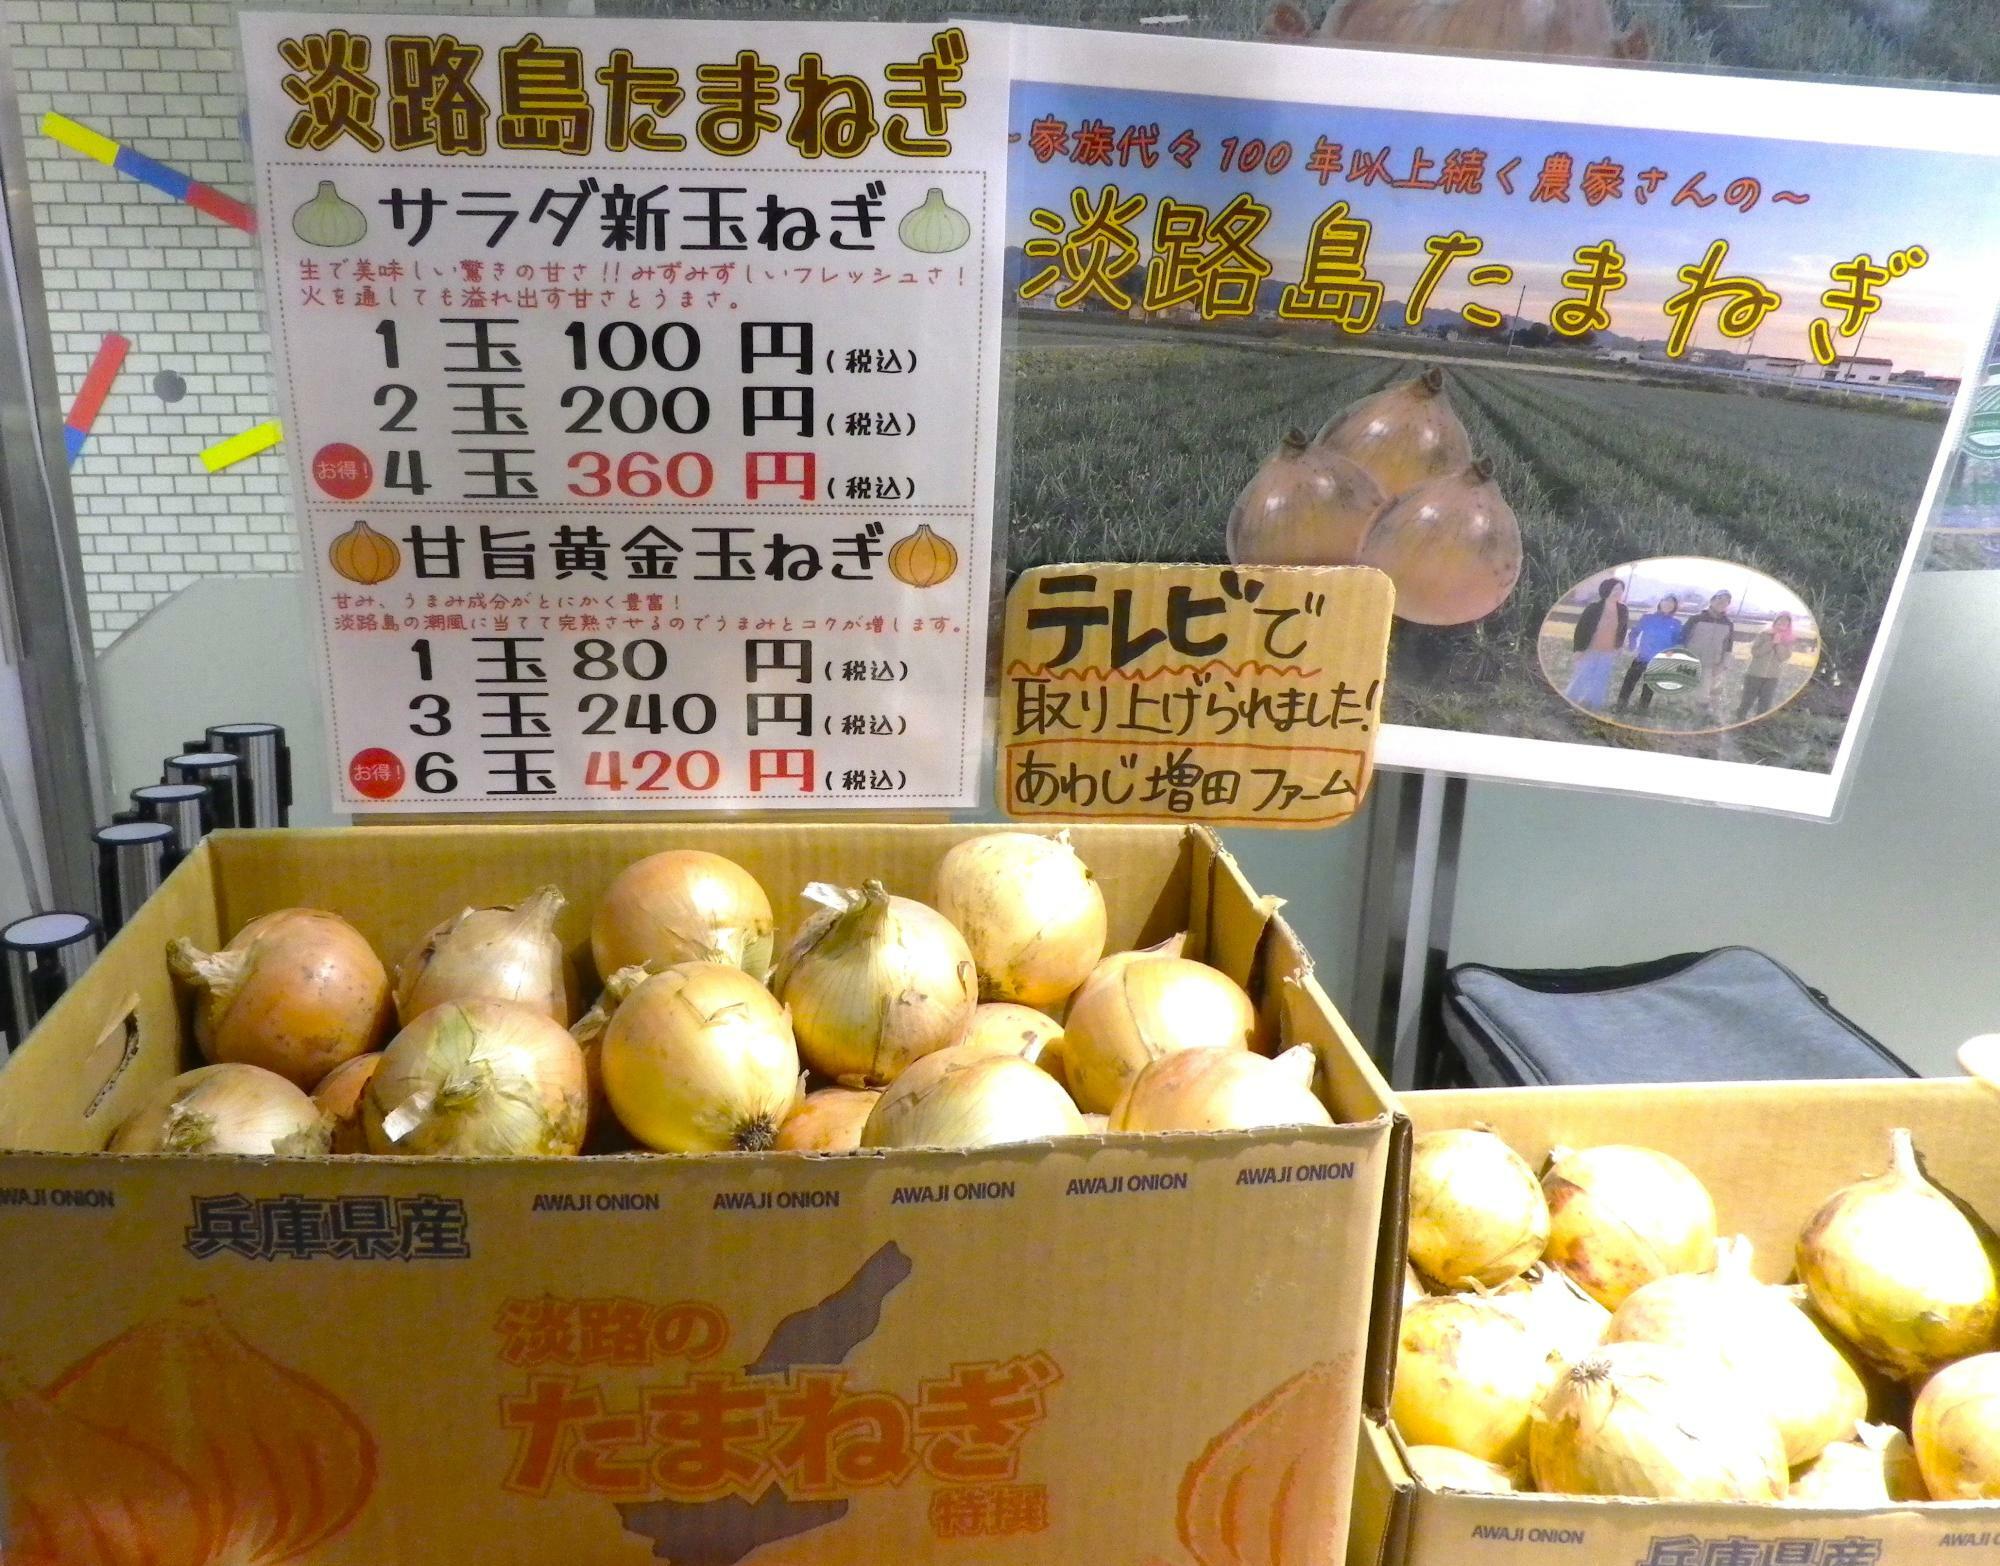 「あわじ増田ファーム」の「淡路島たまねぎ」が販売されています。